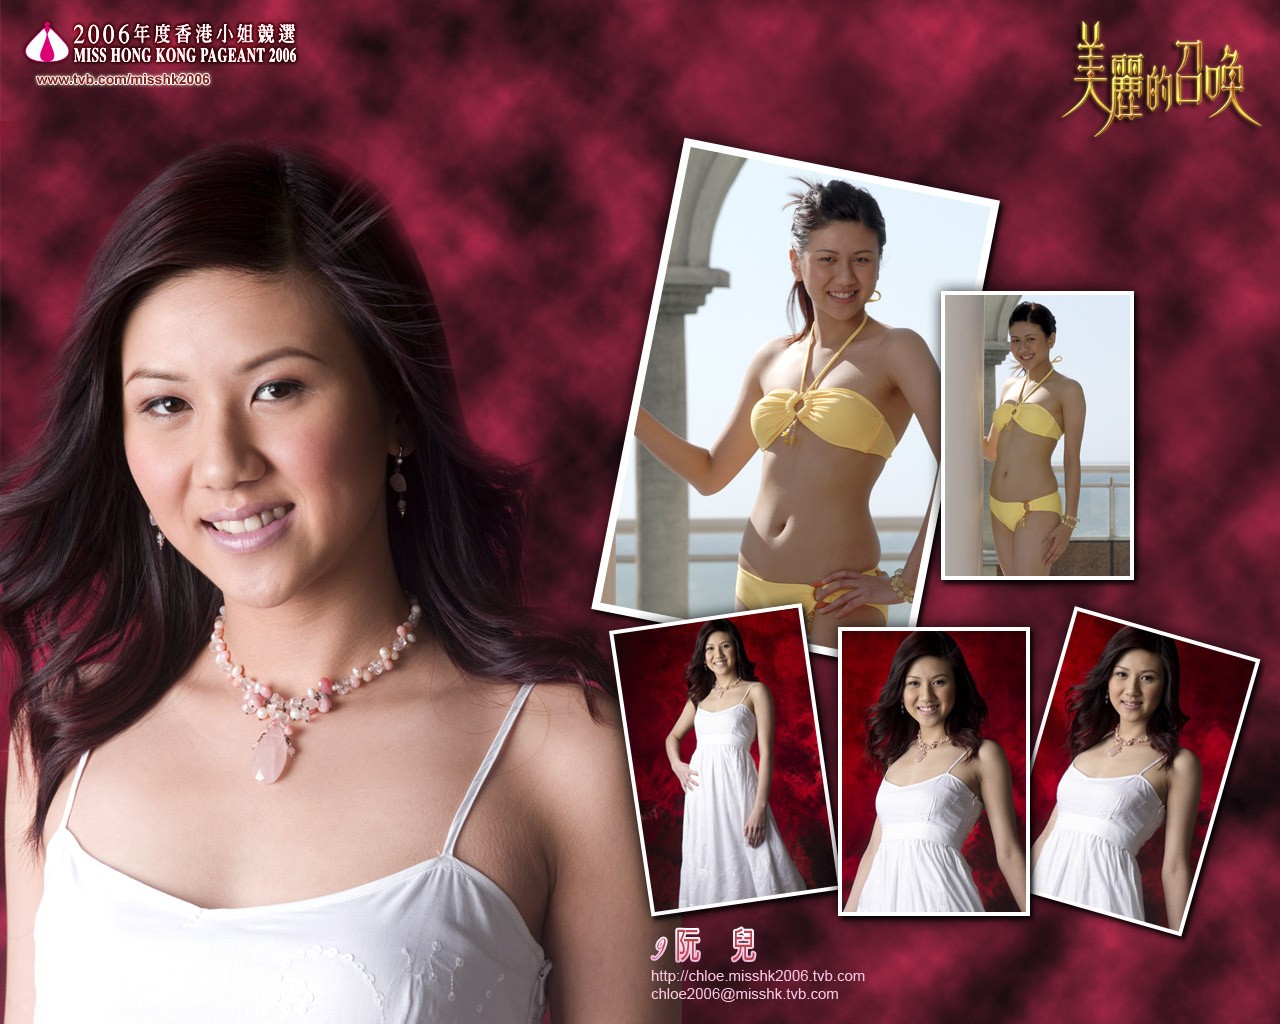 Miss Hong Kong 2006 Album #8 - 1280x1024